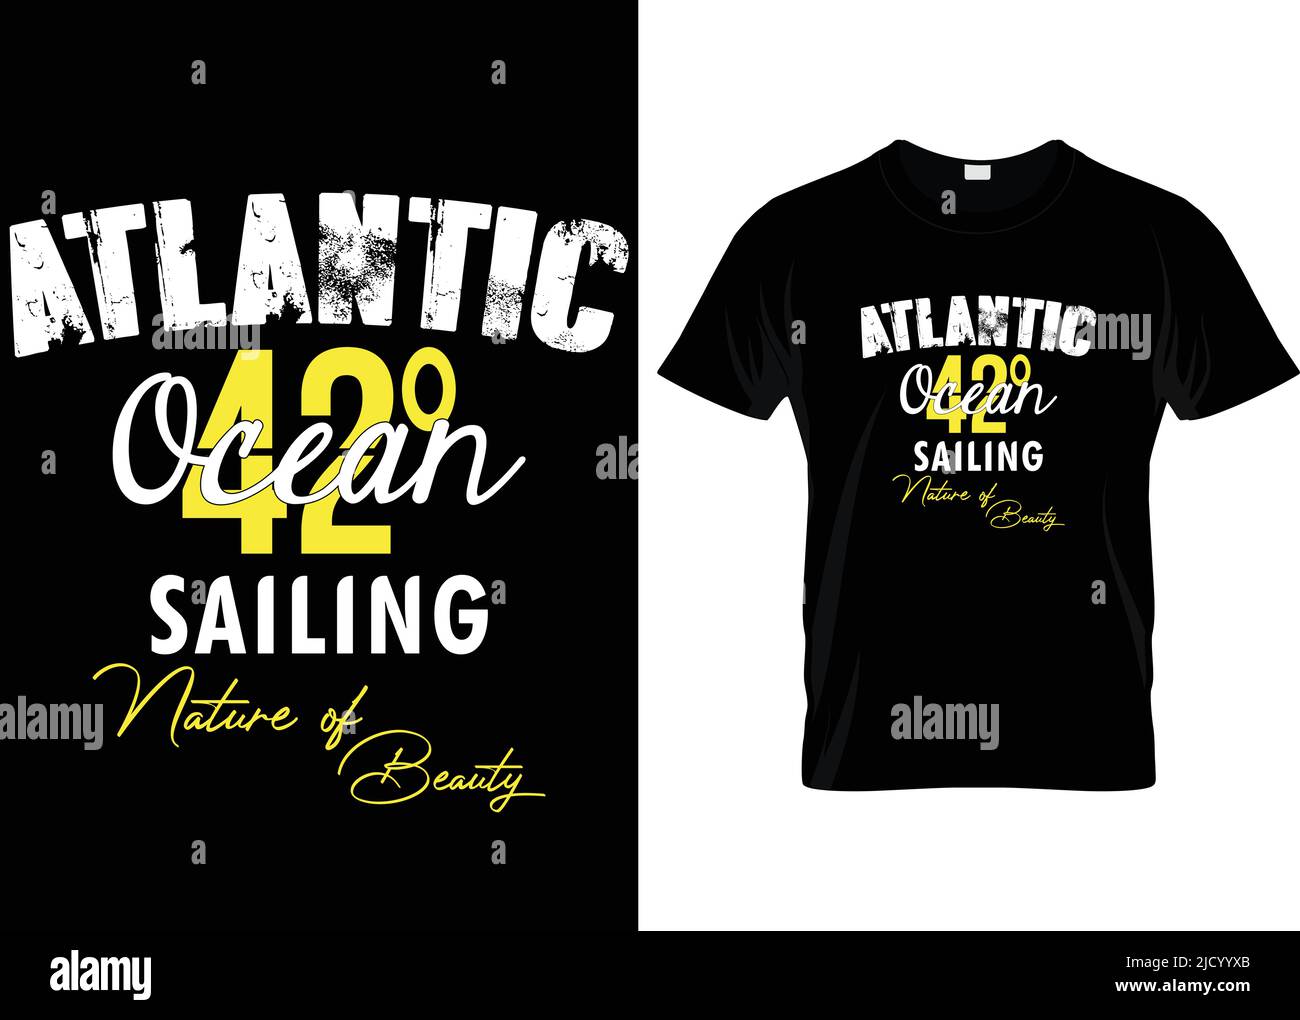 T-shirt océan Atlantique pour les amateurs de sport. T-shirt typographie, t-shirt vecteur et nature... Illustration de Vecteur